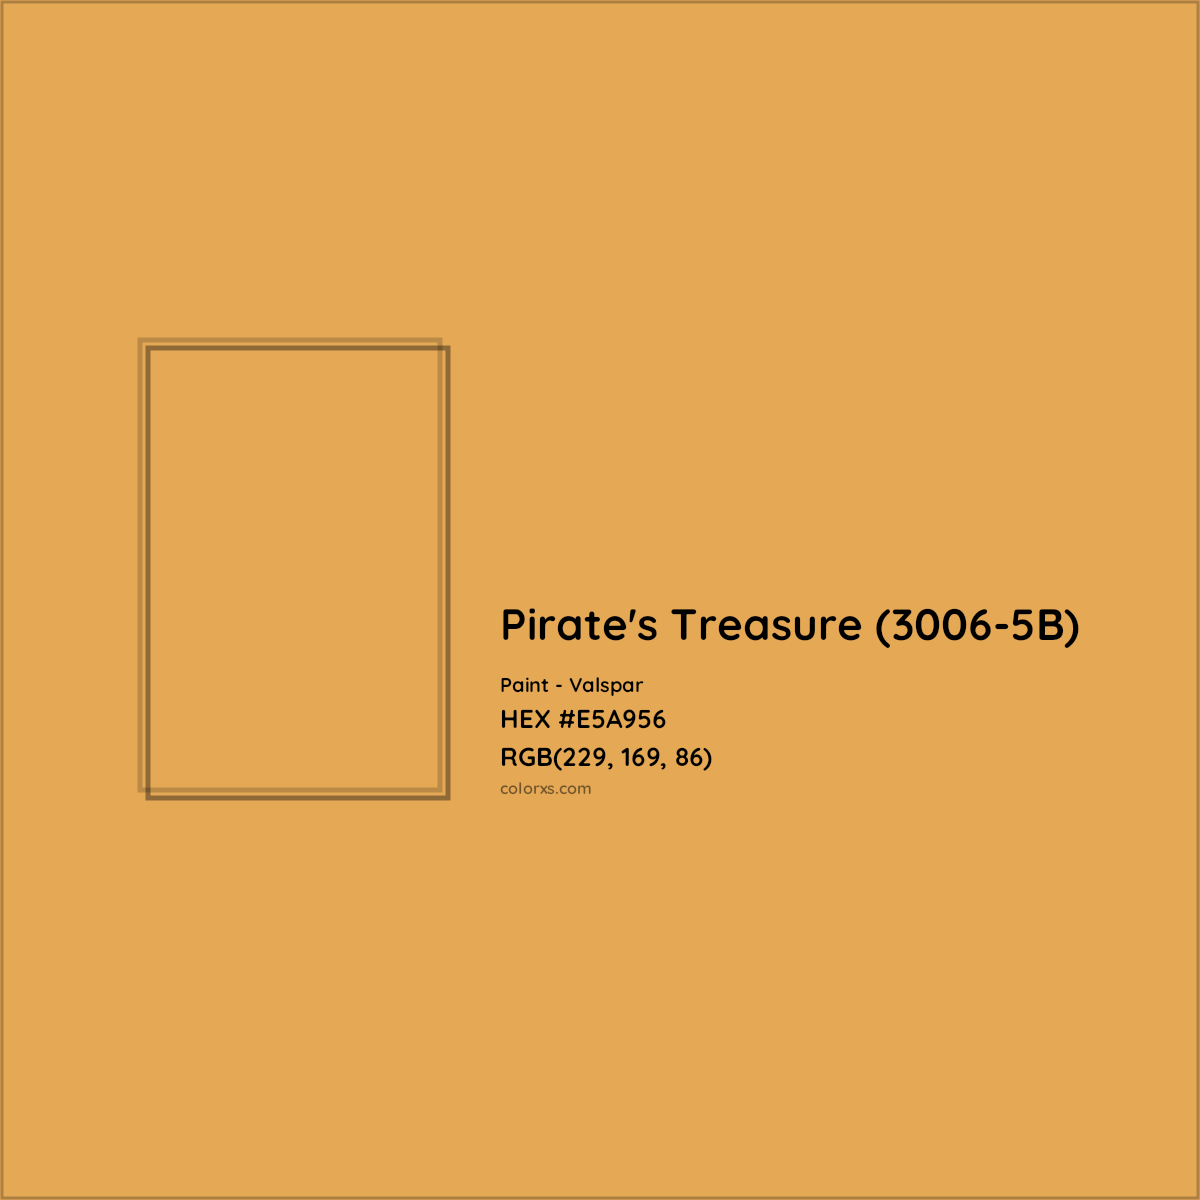 HEX #E5A956 Pirate's Treasure (3006-5B) Paint Valspar - Color Code